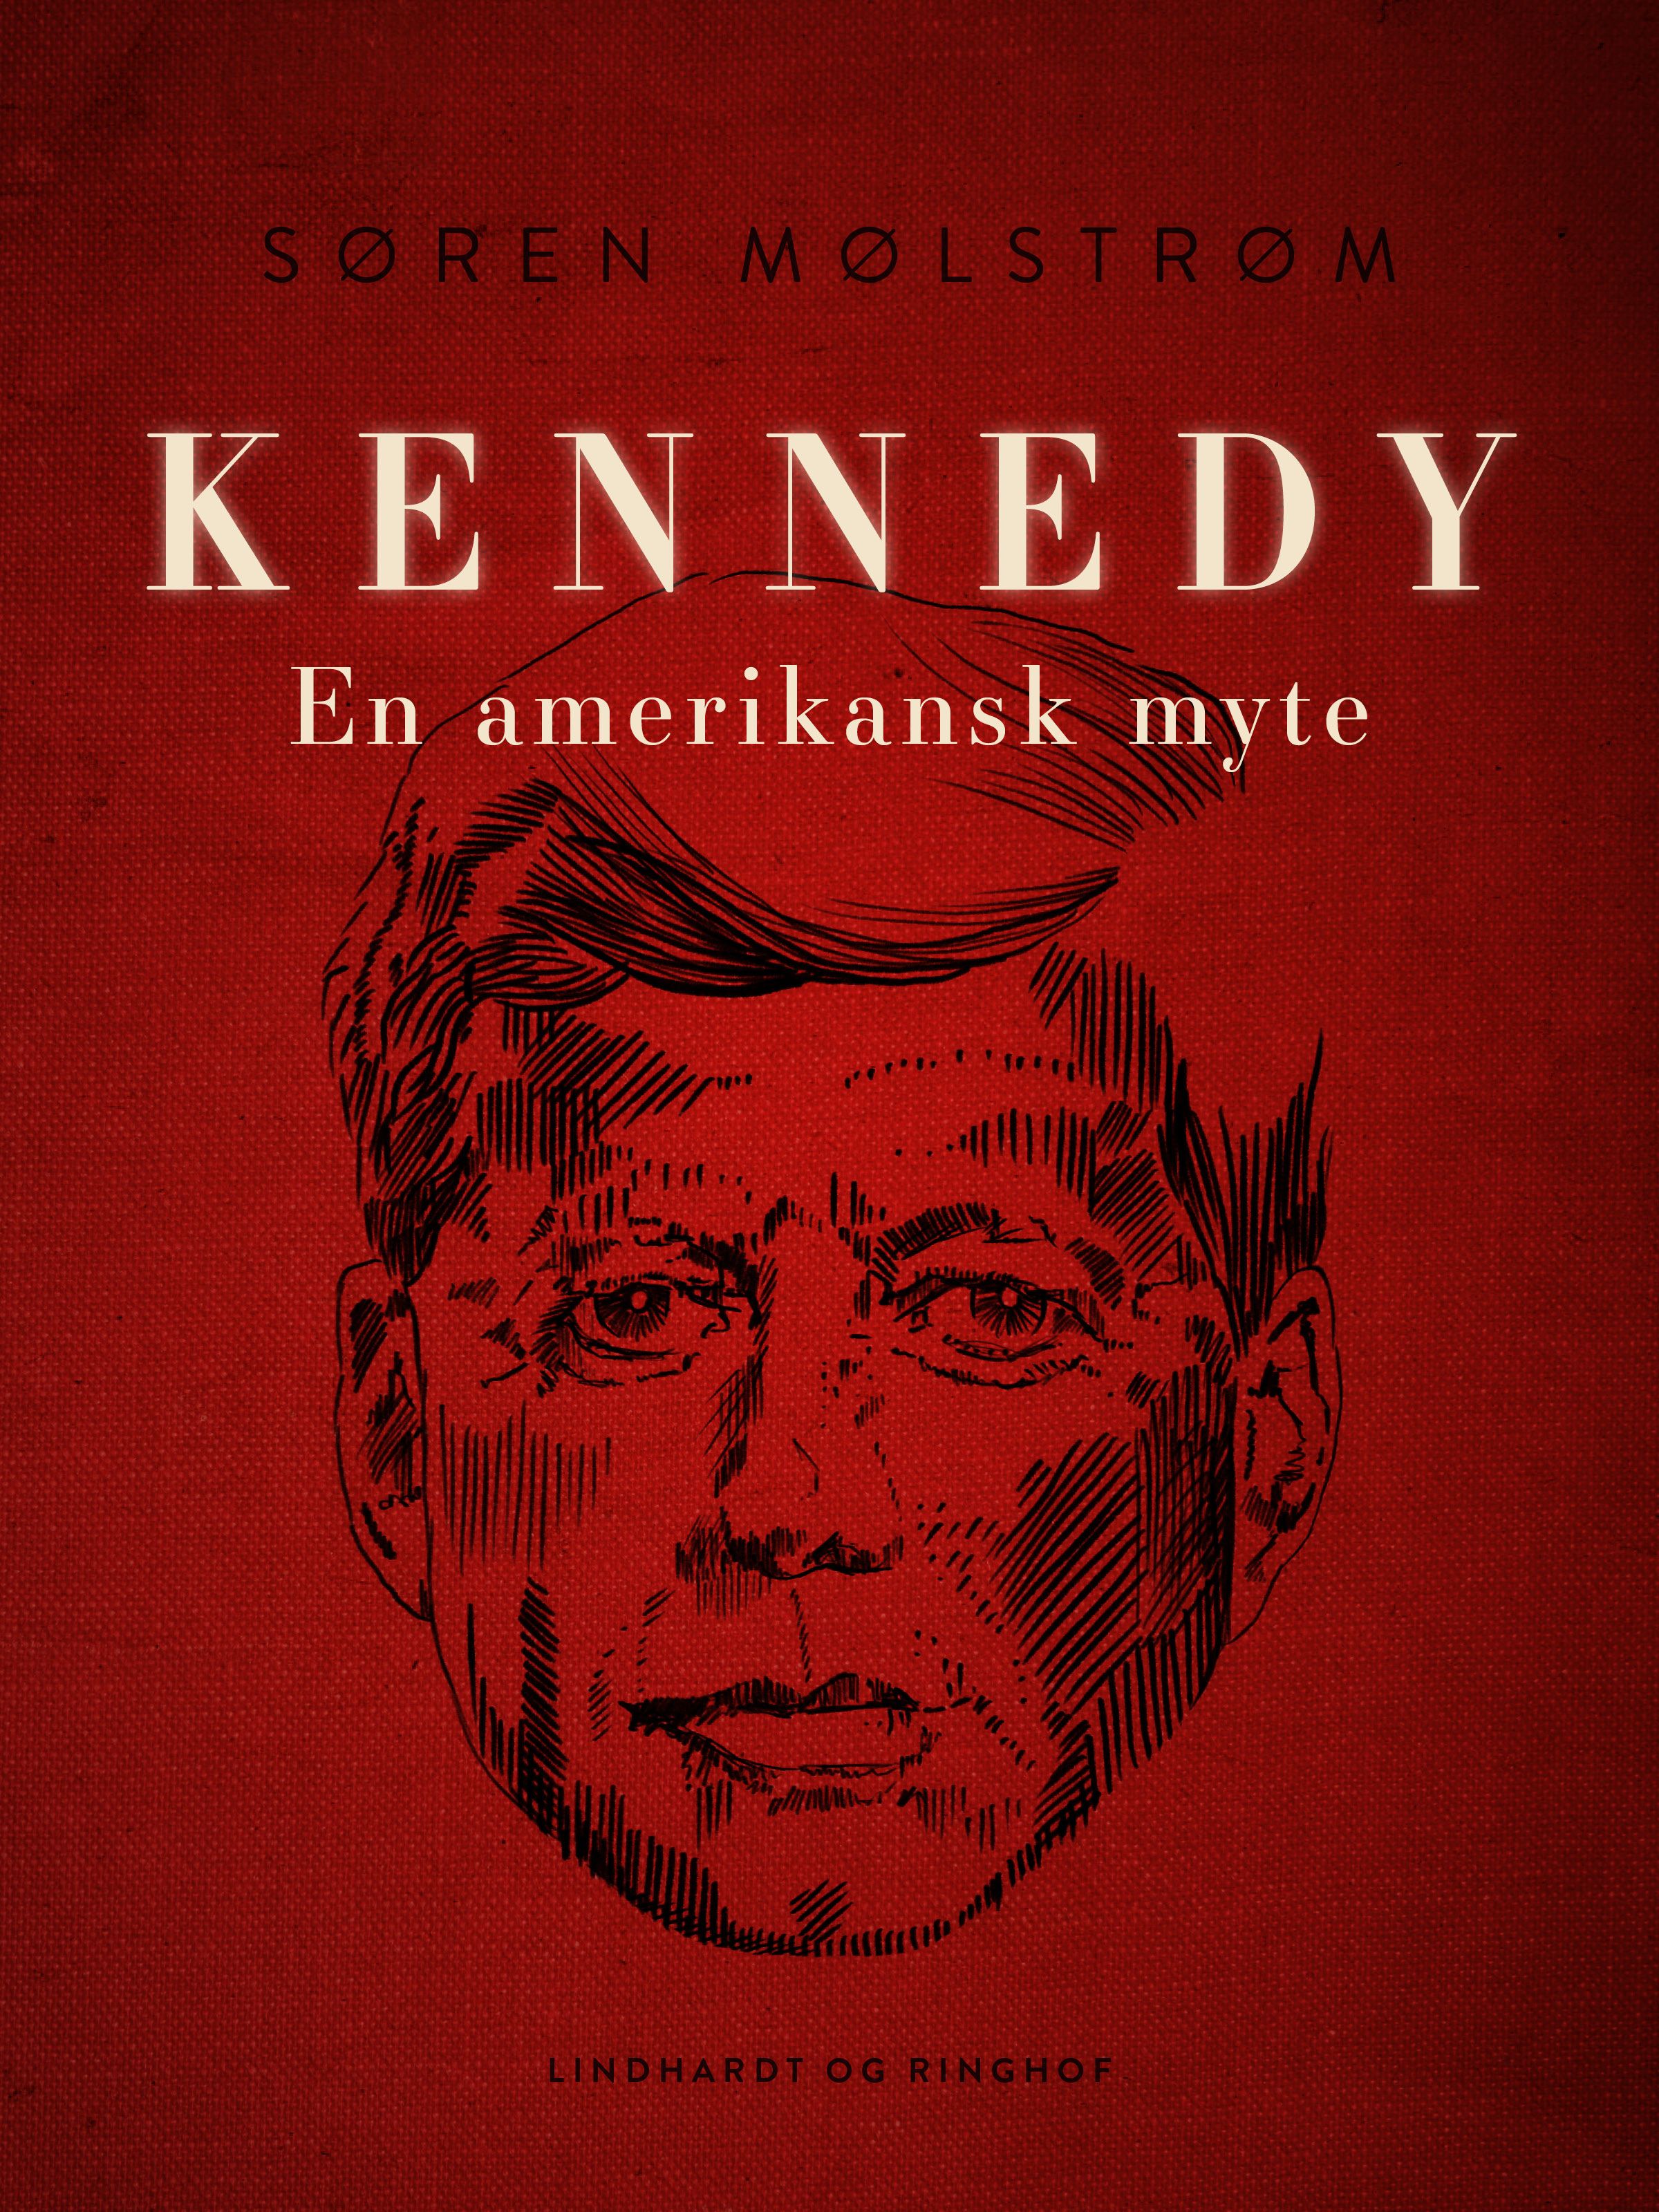 Kennedy - en amerikansk myte, e-bok av Søren Mølstrøm